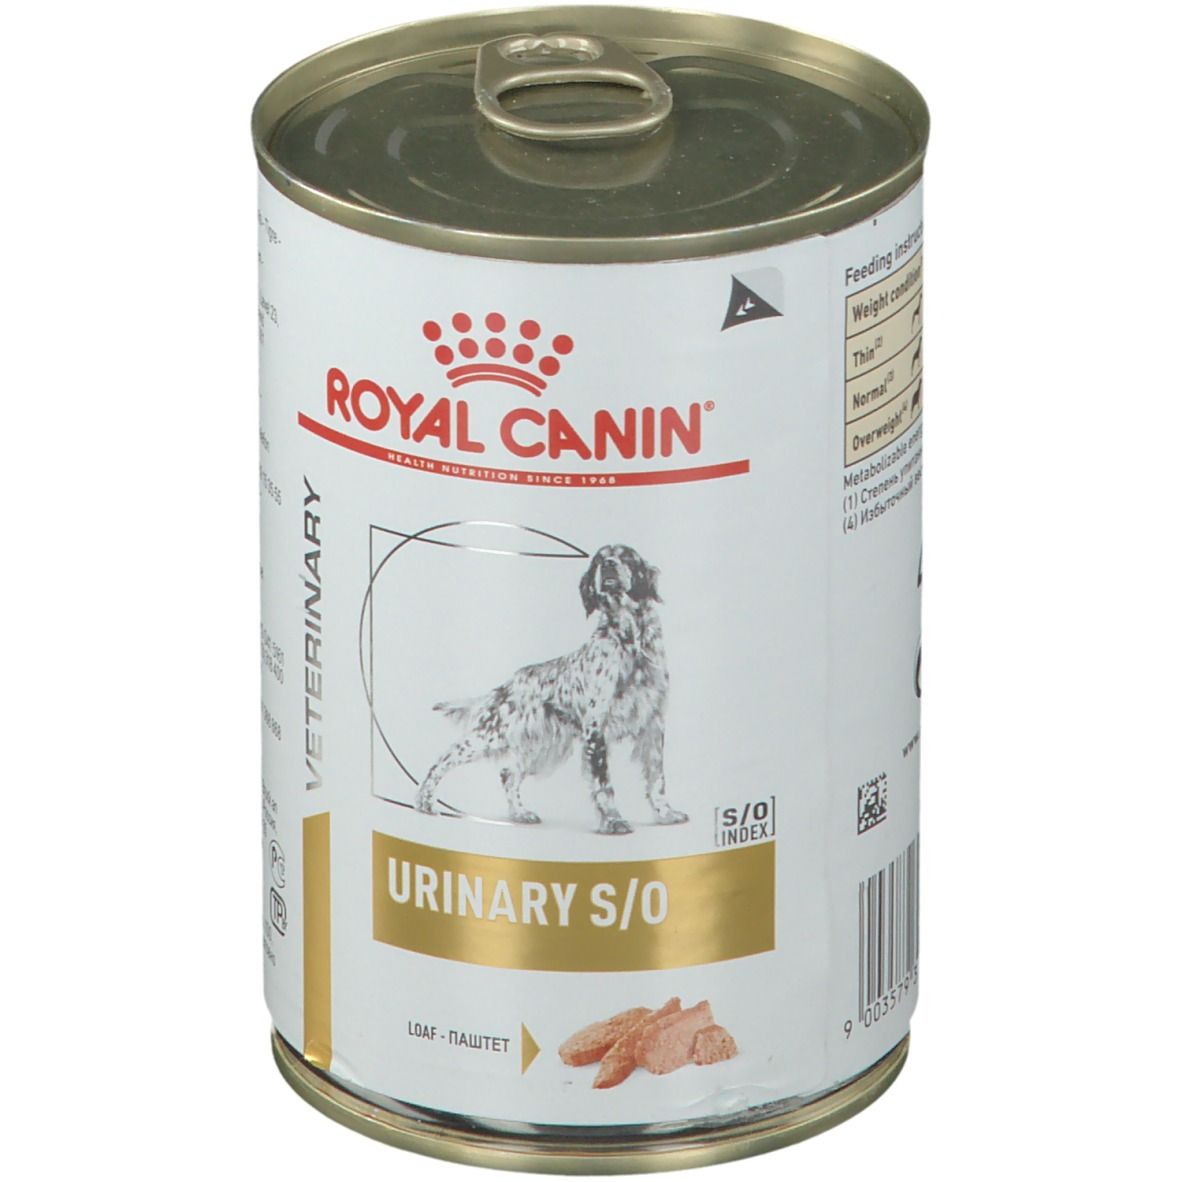 Royal Canin Veterinary Canine Urinary S/O